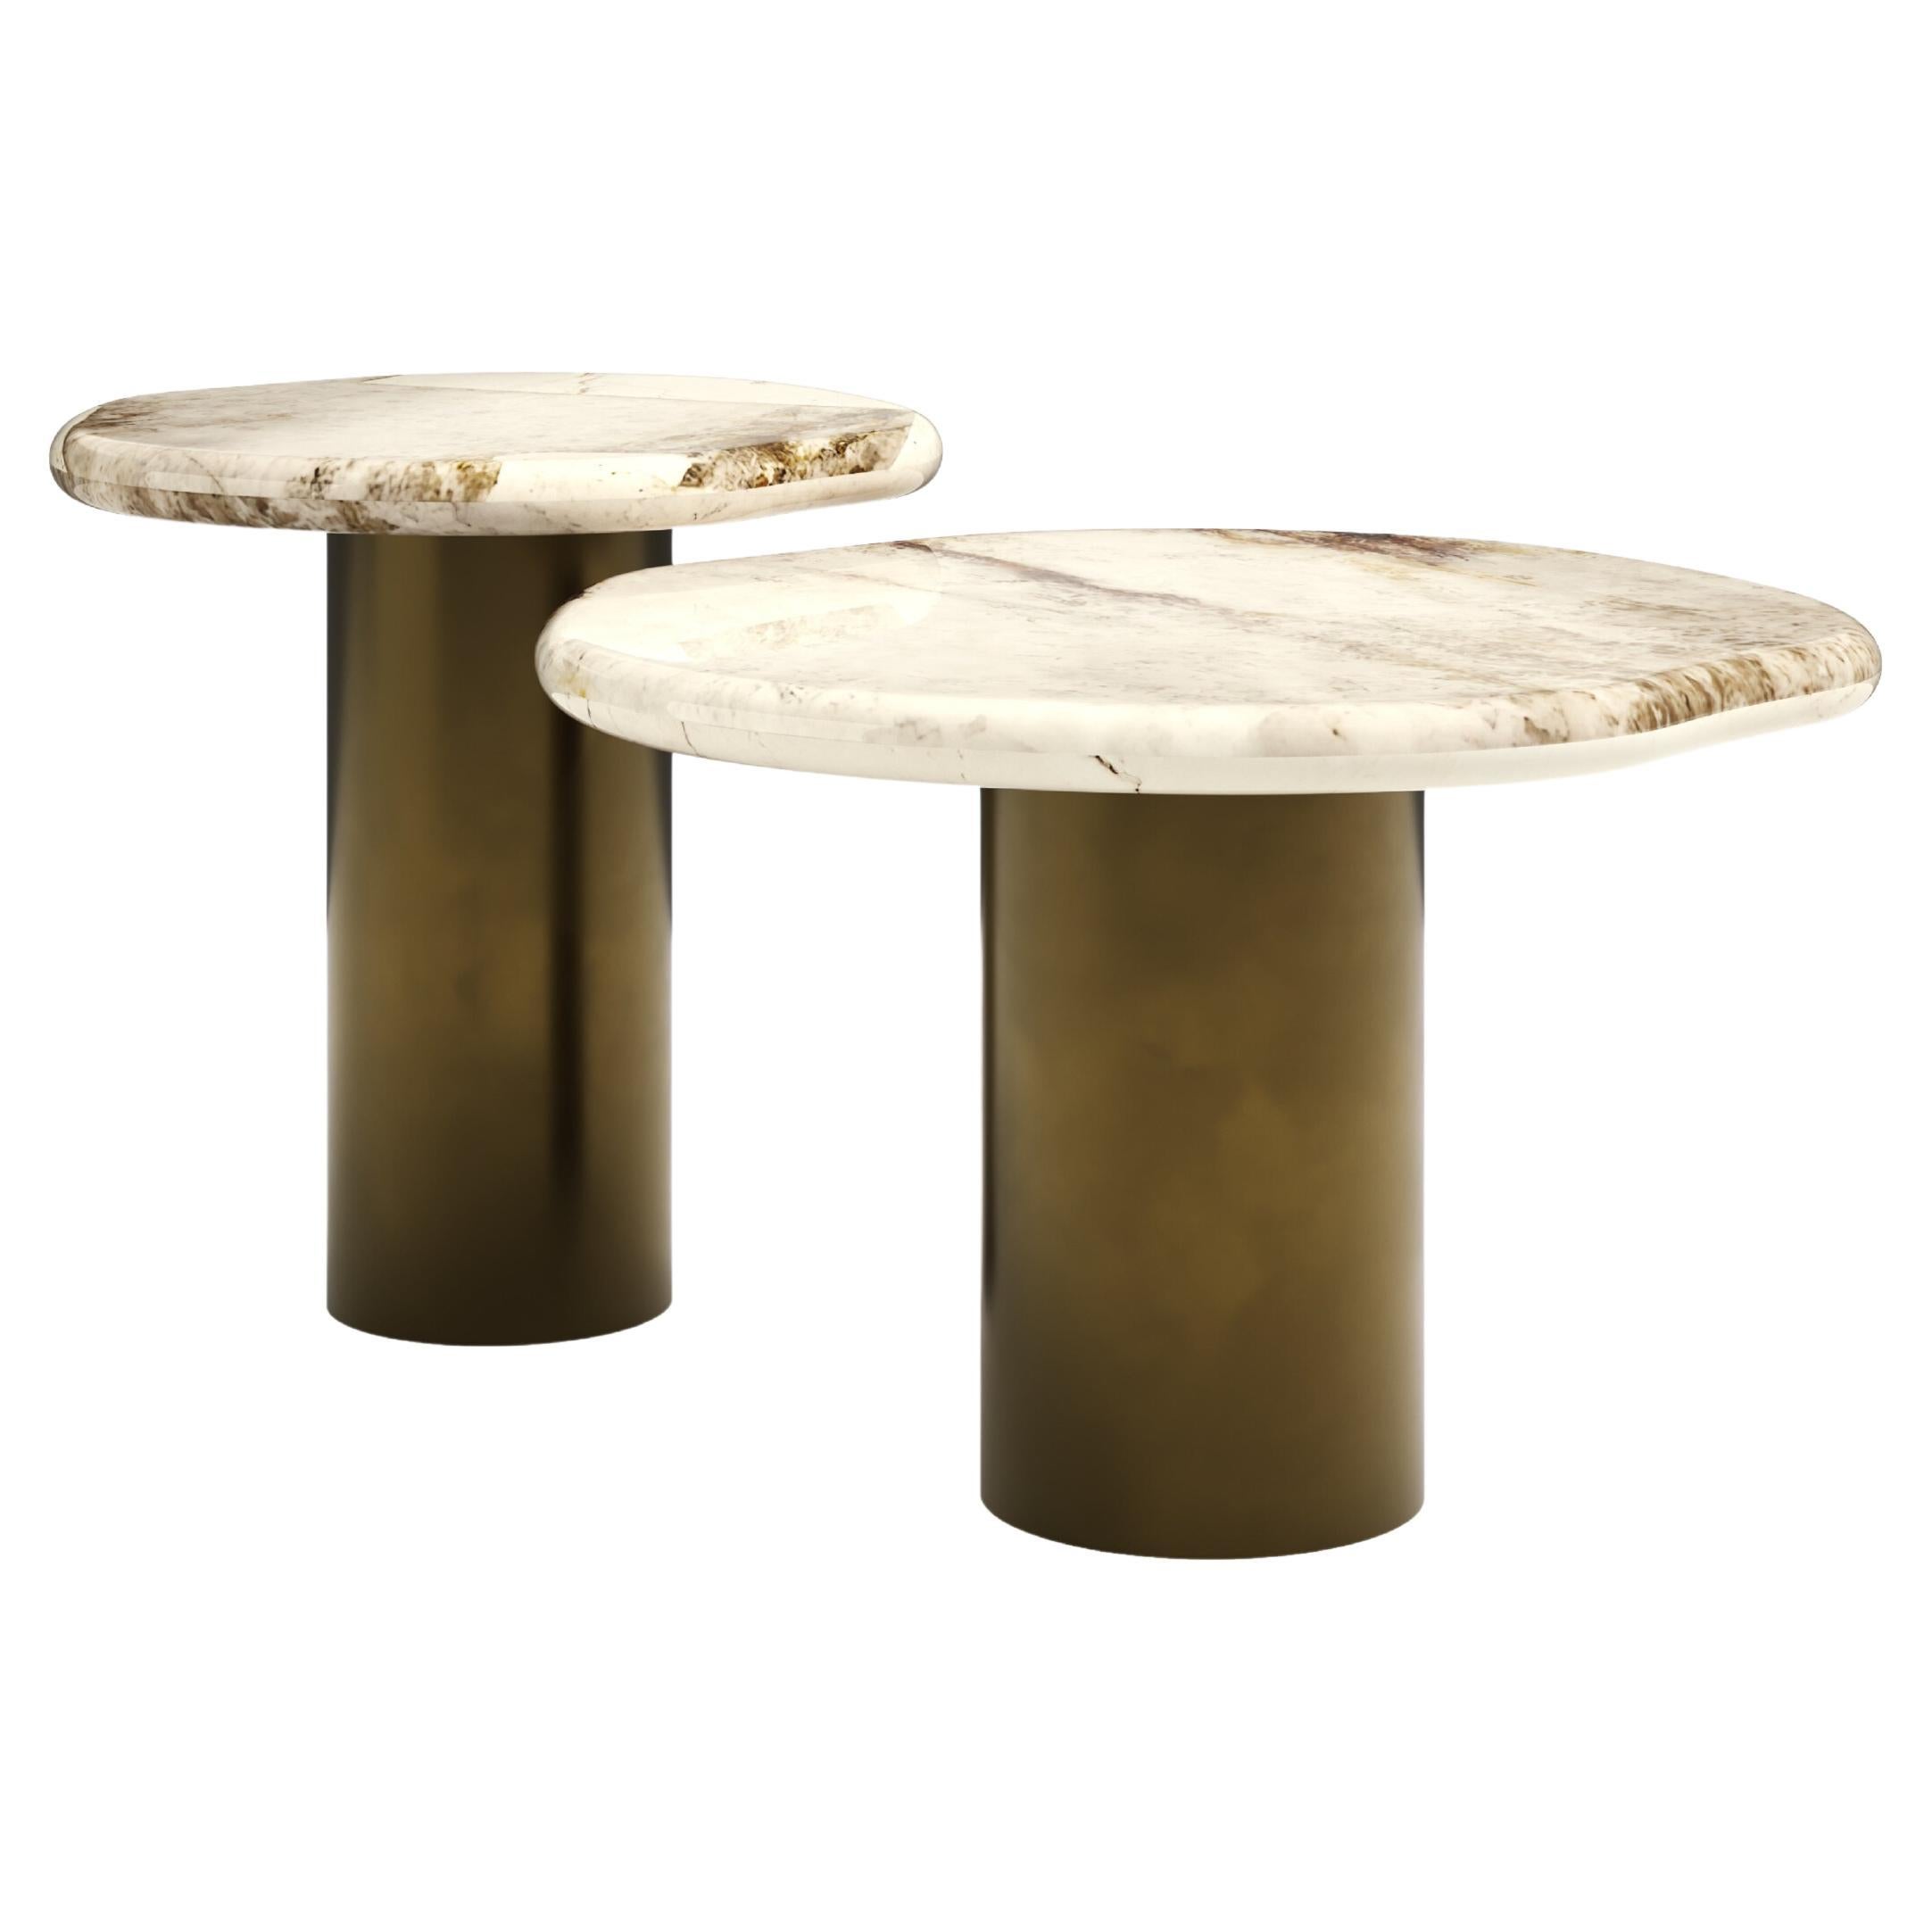 FORM(LA) Lago Round Side Table 18”L x 18”W x 18”H Quartzite & Antique Bronze For Sale